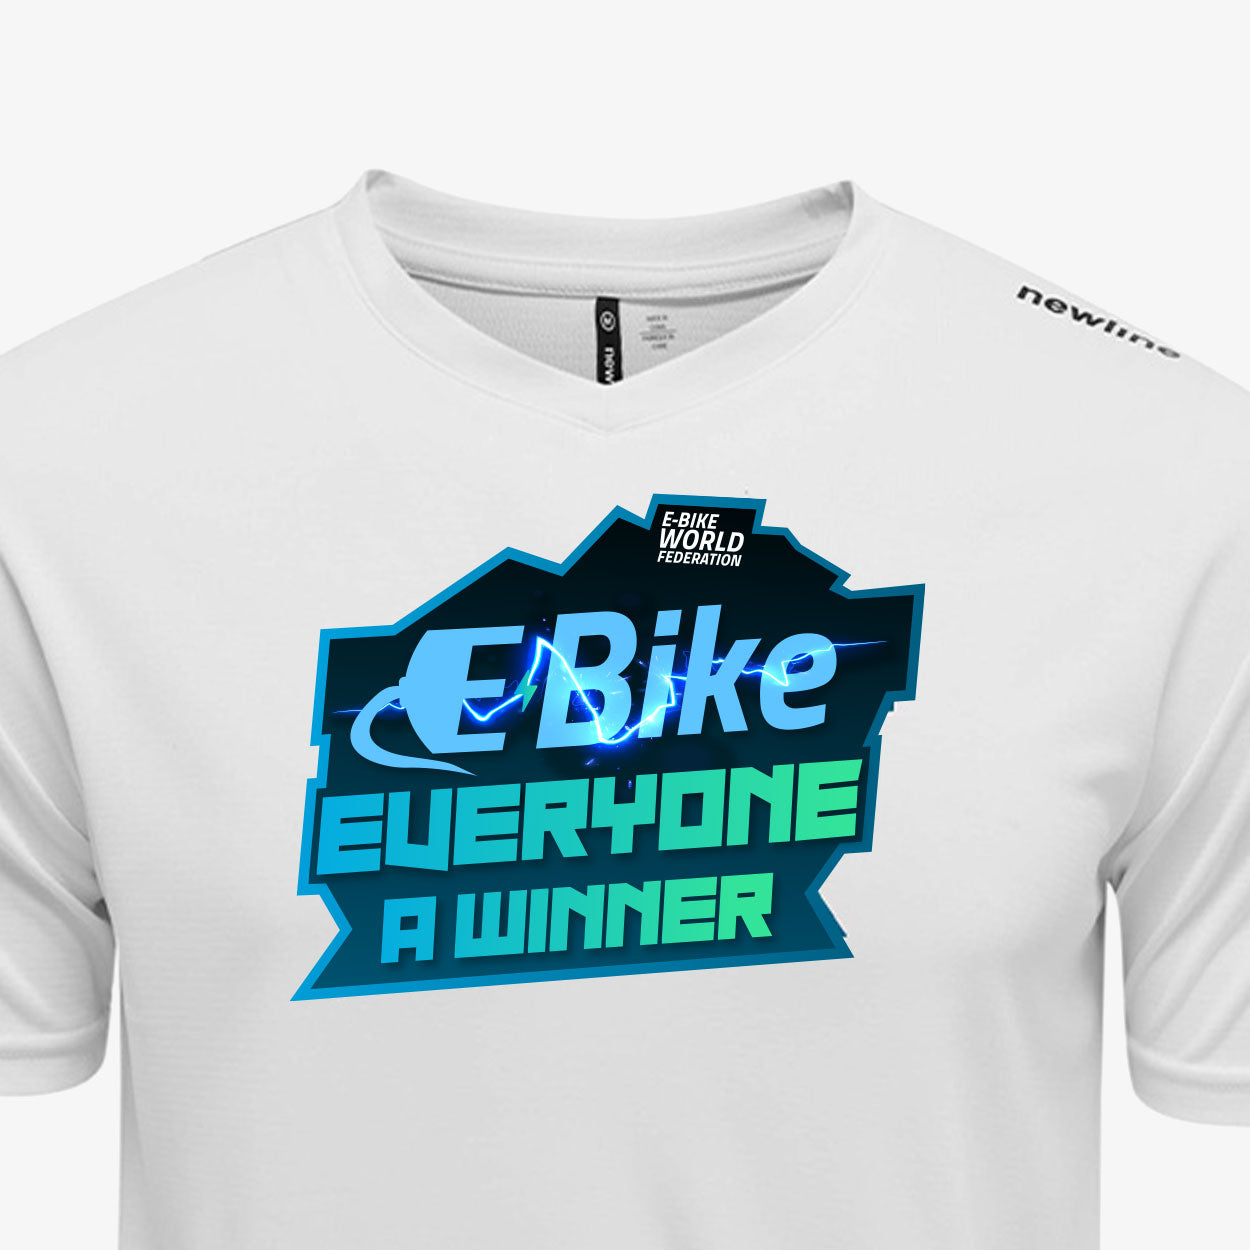 E-Bike Electrified - T-Shirt